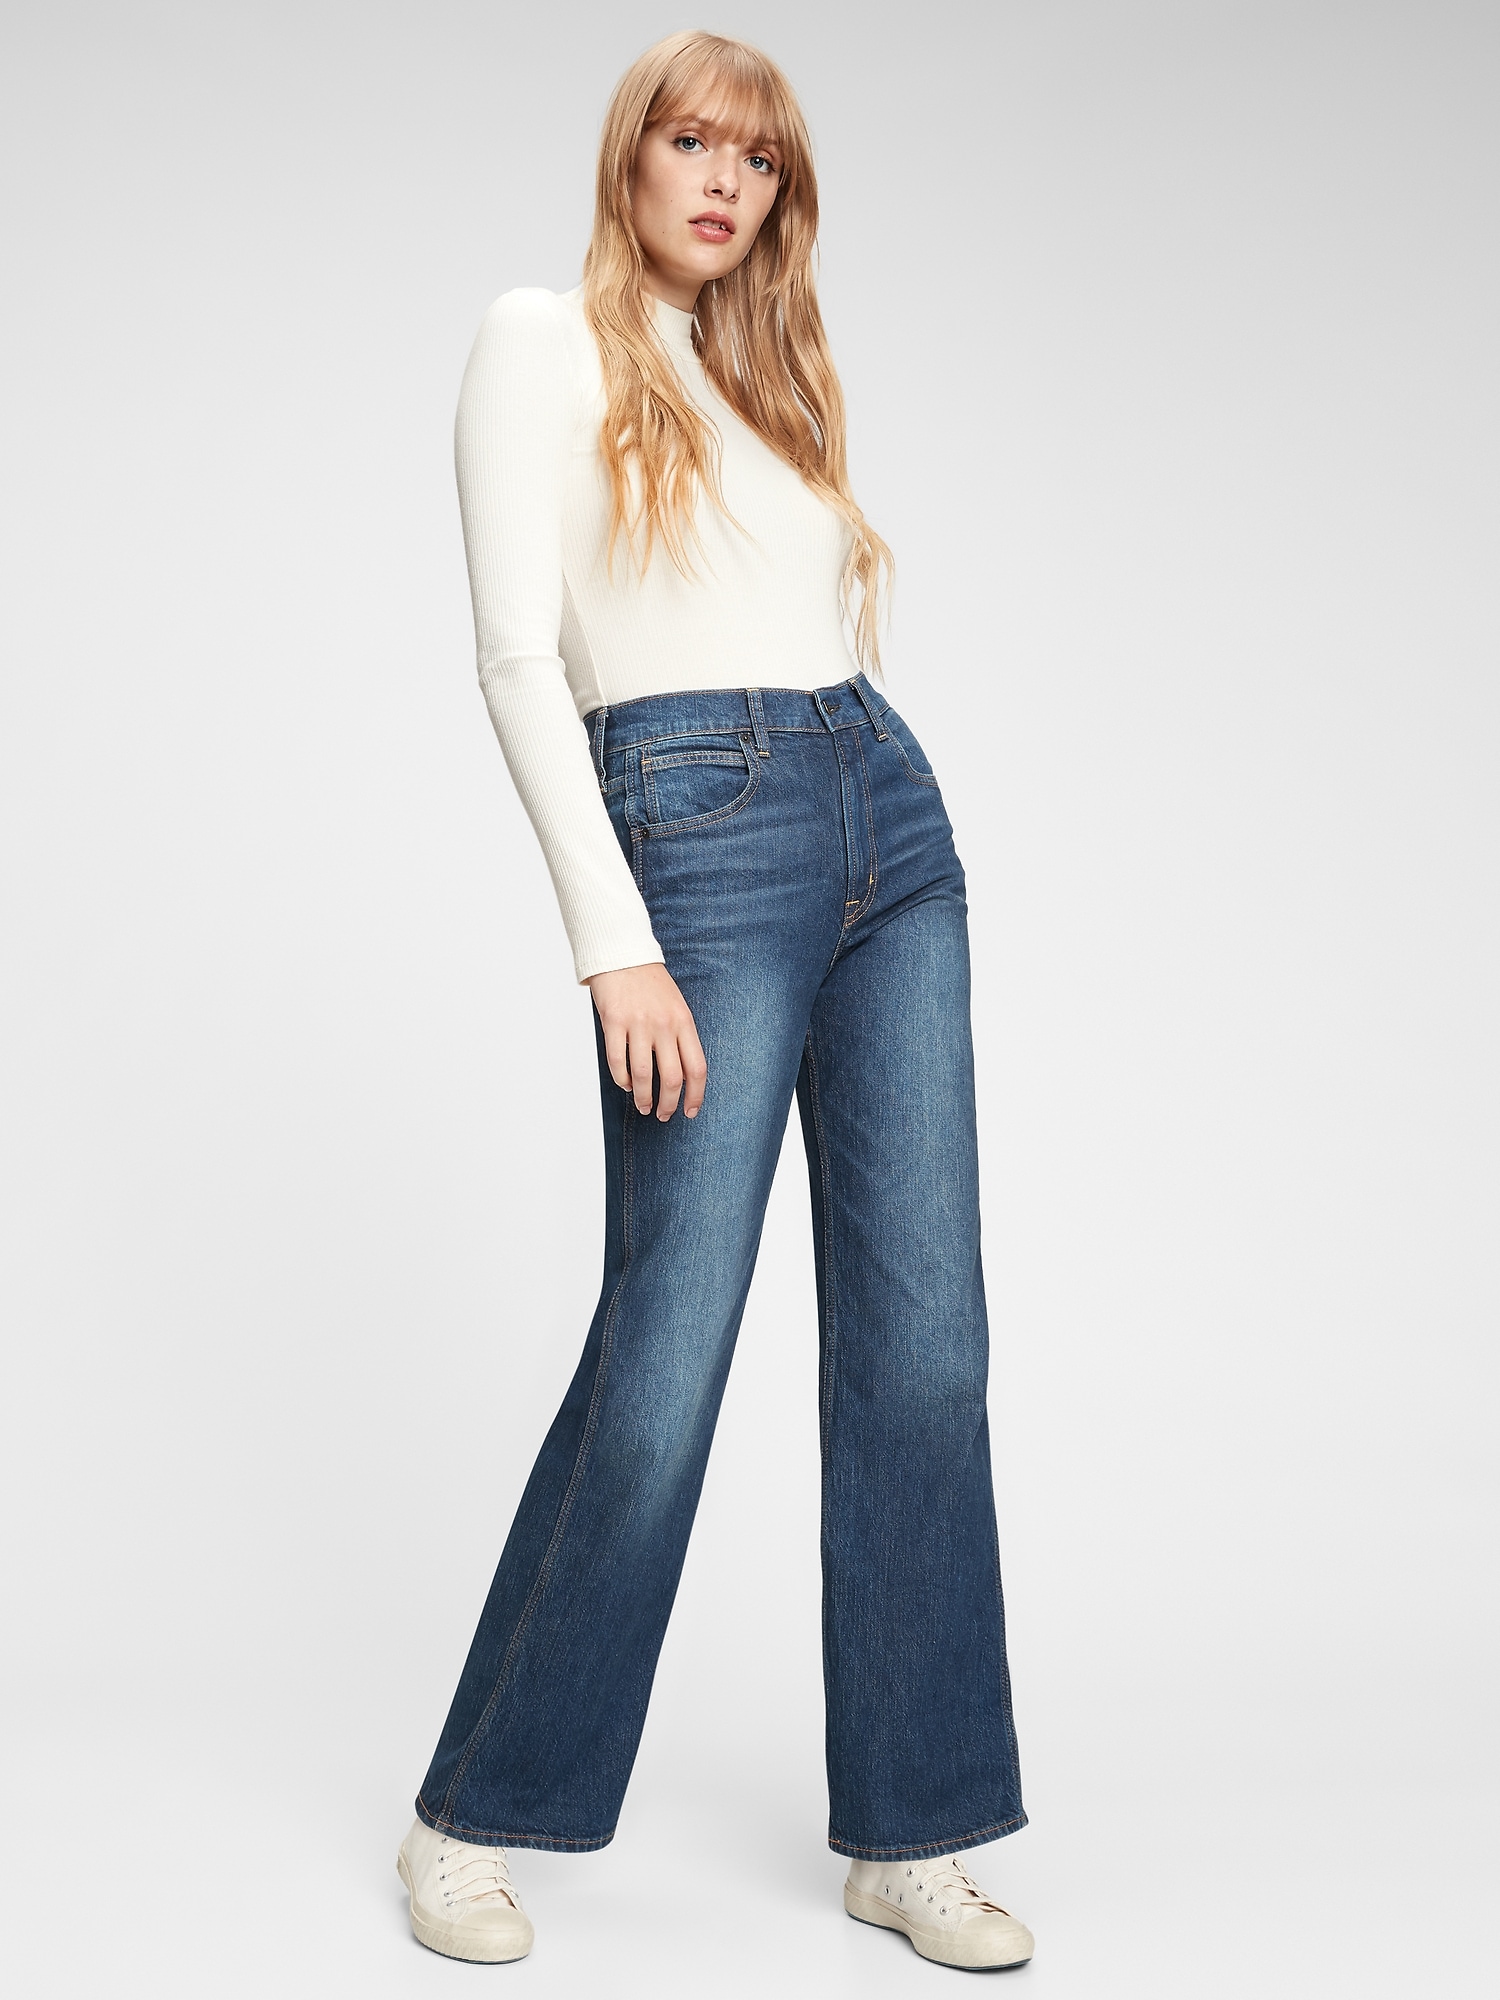 gap vintage jeans